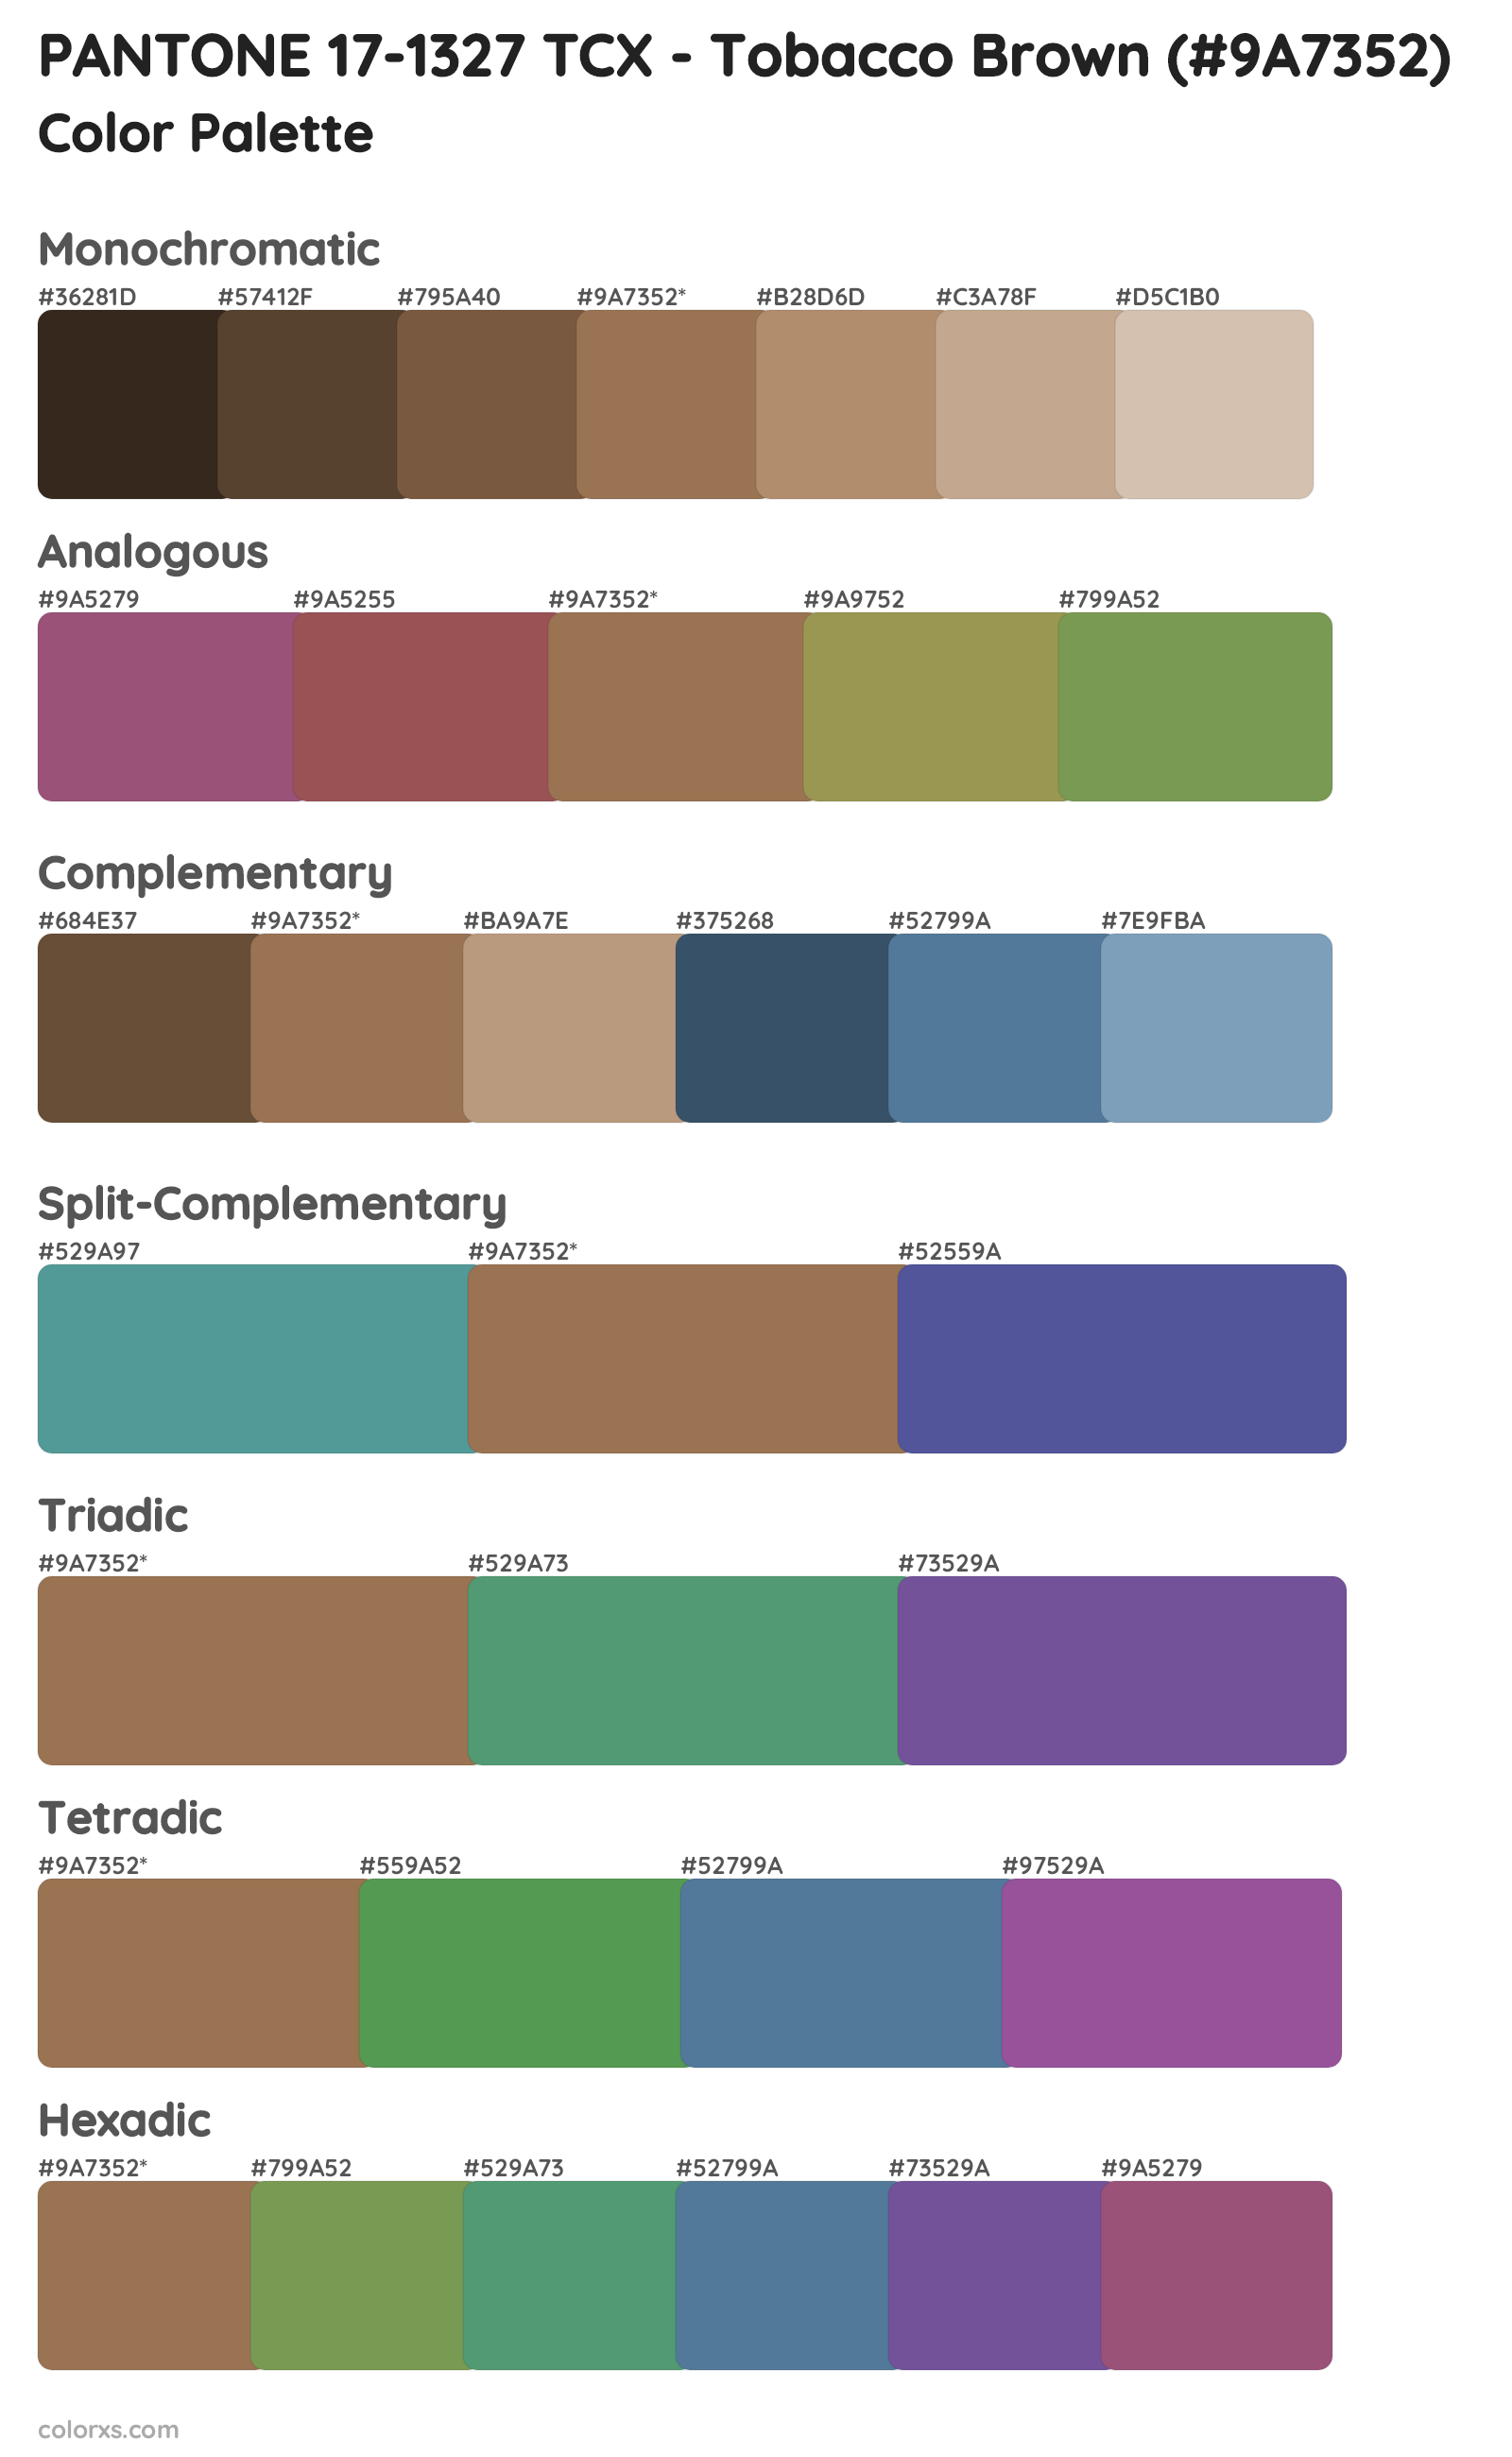 PANTONE 17-1327 TCX - Tobacco Brown Color Scheme Palettes